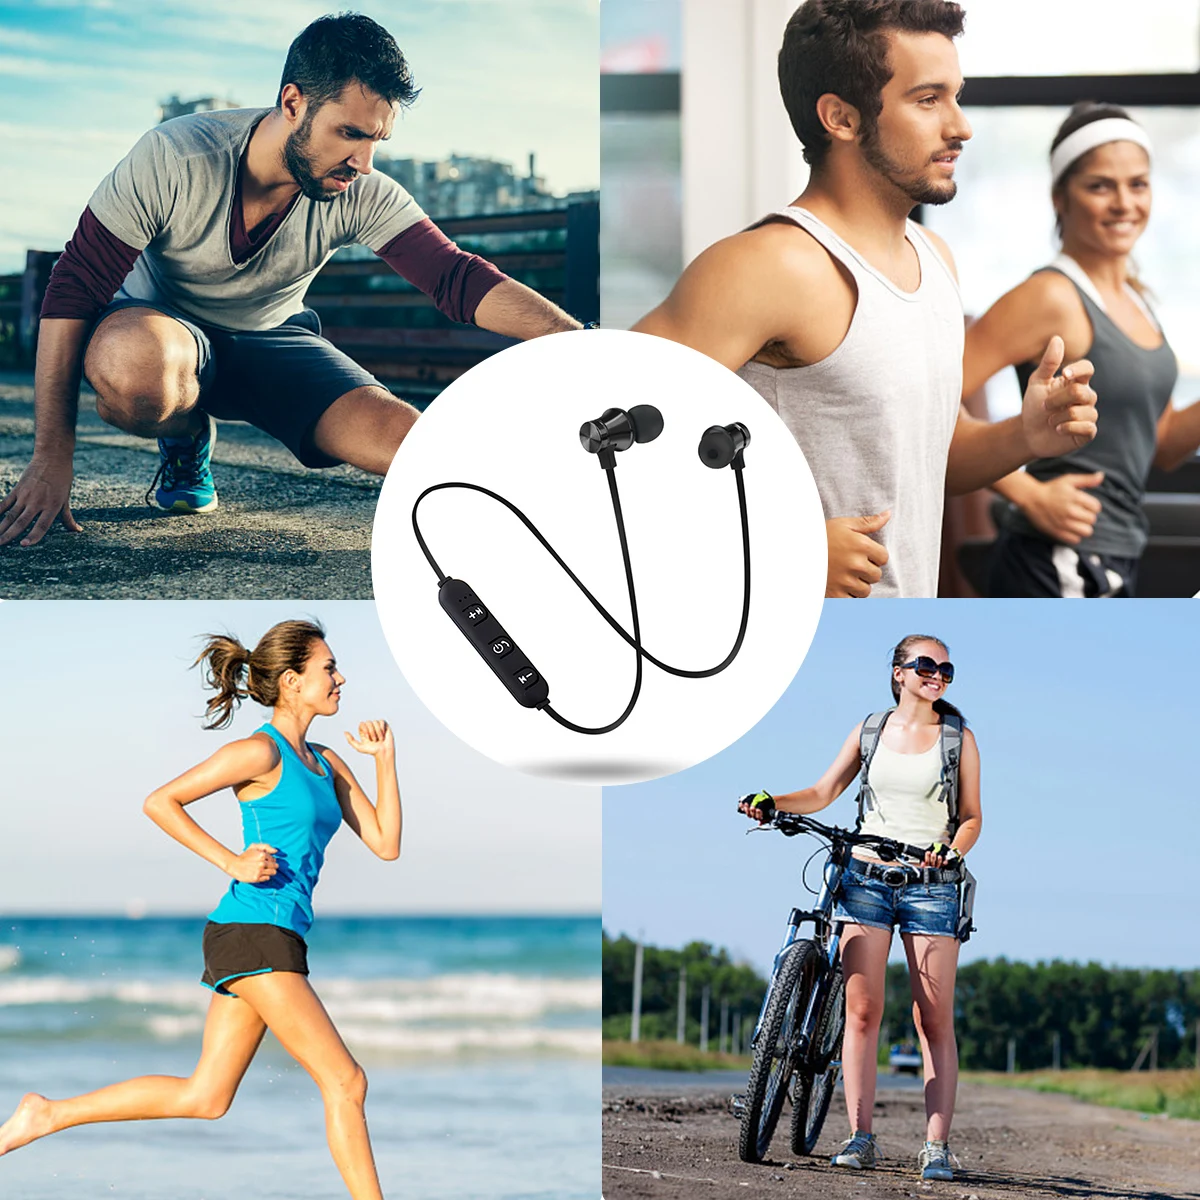 Bluetooth наушники S8, беспроводные наушники с шейным ремешком, MP3, музыкальная игра, видео гарнитура, водонепроницаемые спортивные наушники с микрофоном